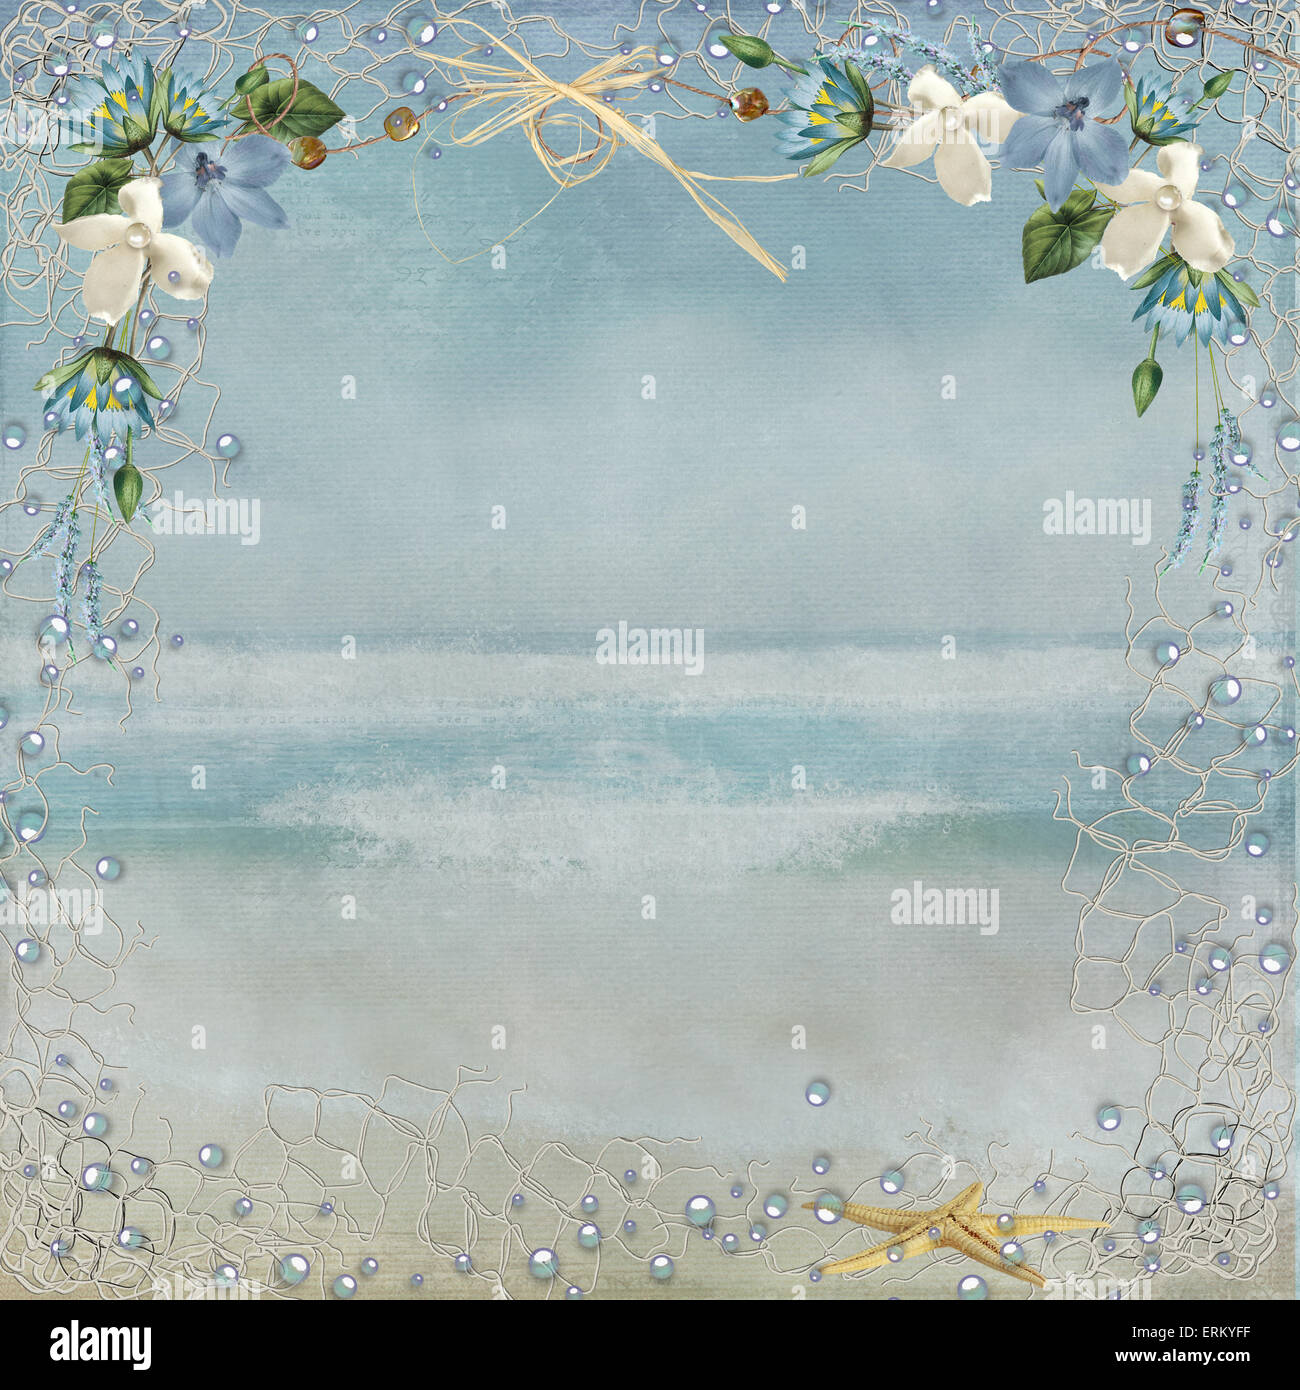 Luftblasen Seesterne und nautischen Netting Grenze mit Blumen und Bast Bogen auf Textur Ozean Hintergrund. Stockfoto